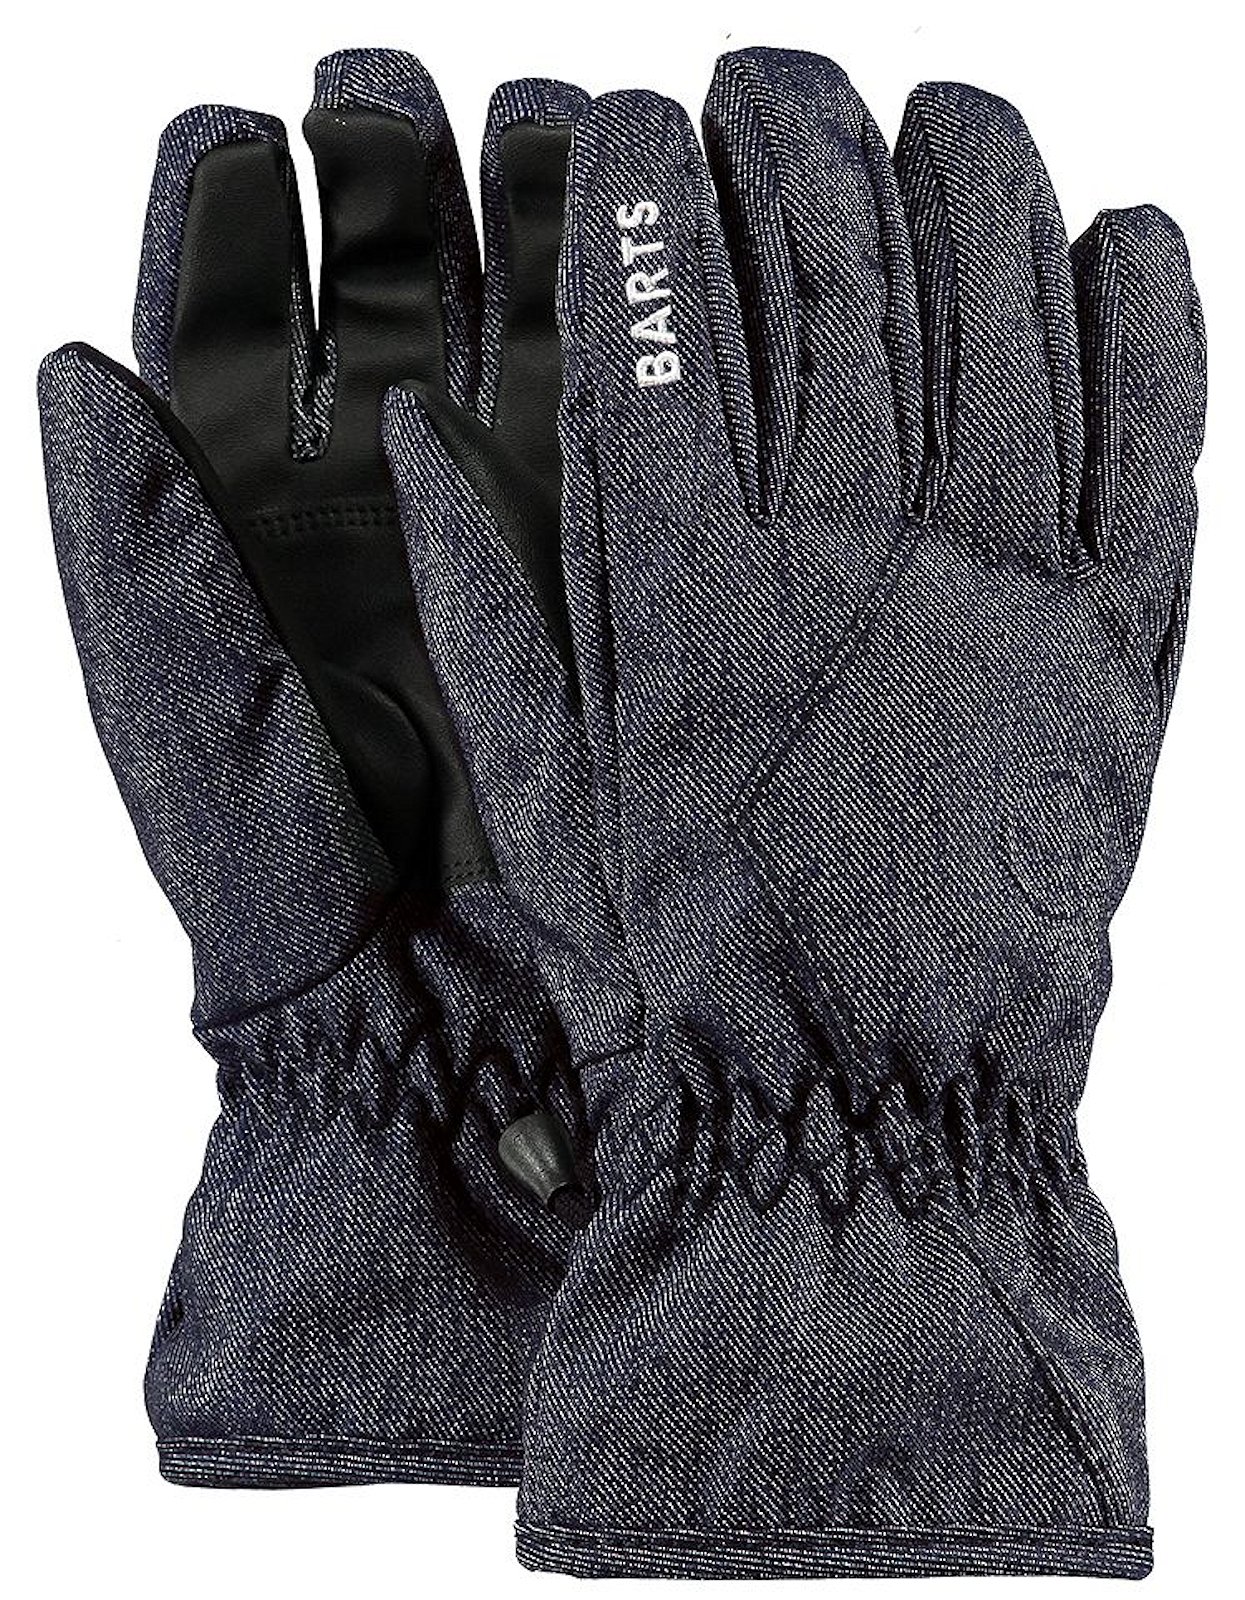 Barts Basic Skigloves Handschuhe Skihandschuhe black 